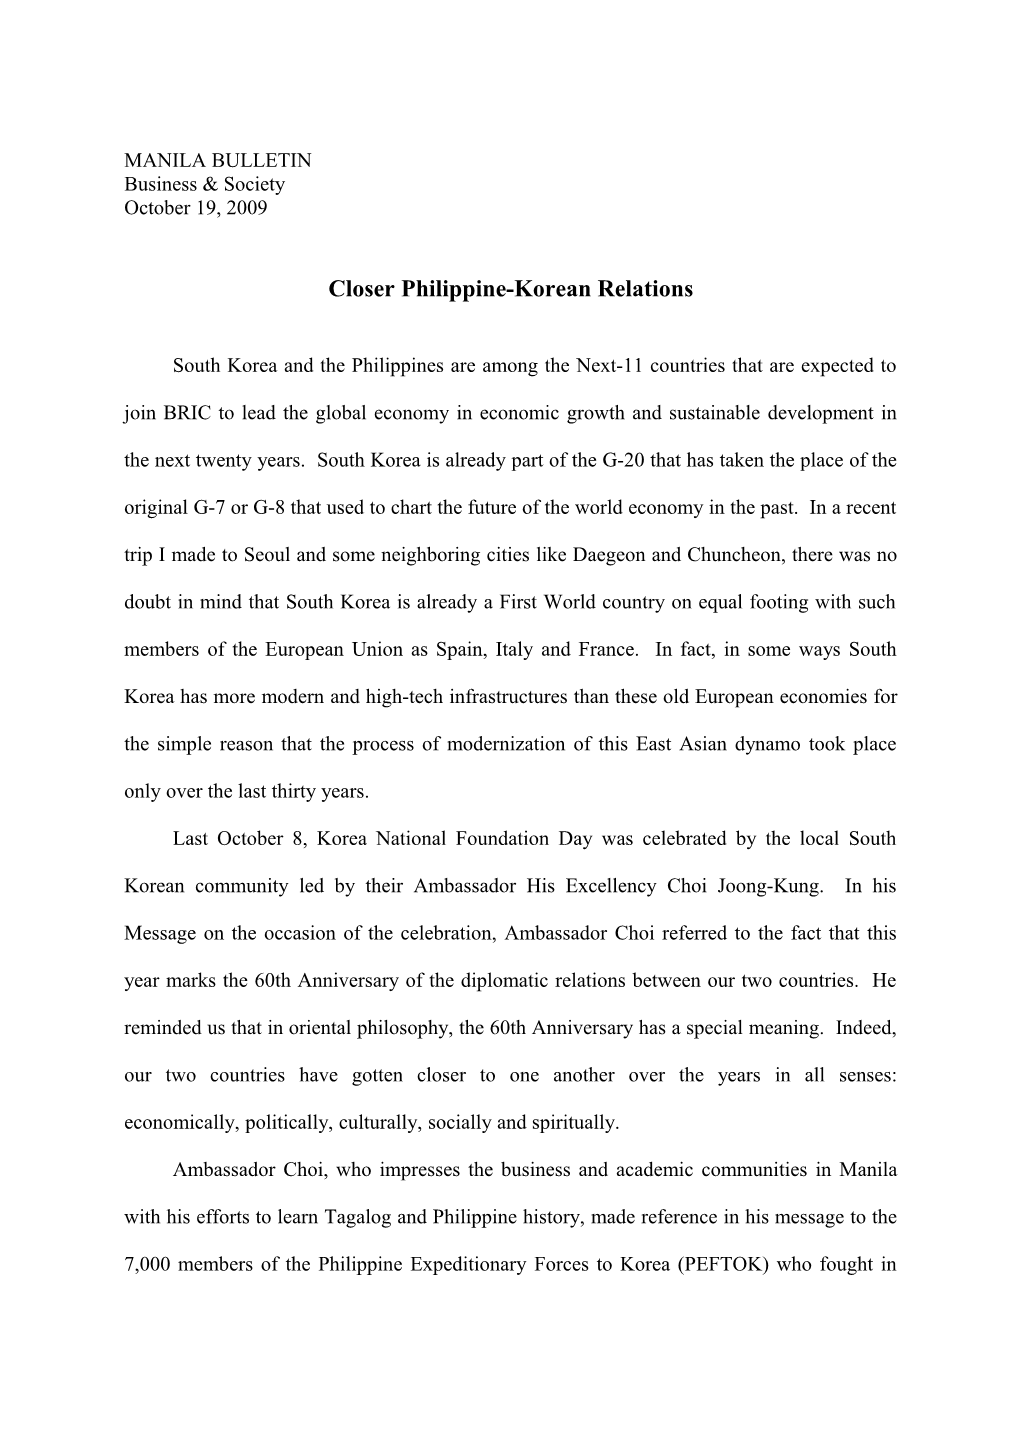 Closer Philippine-Korean Relations